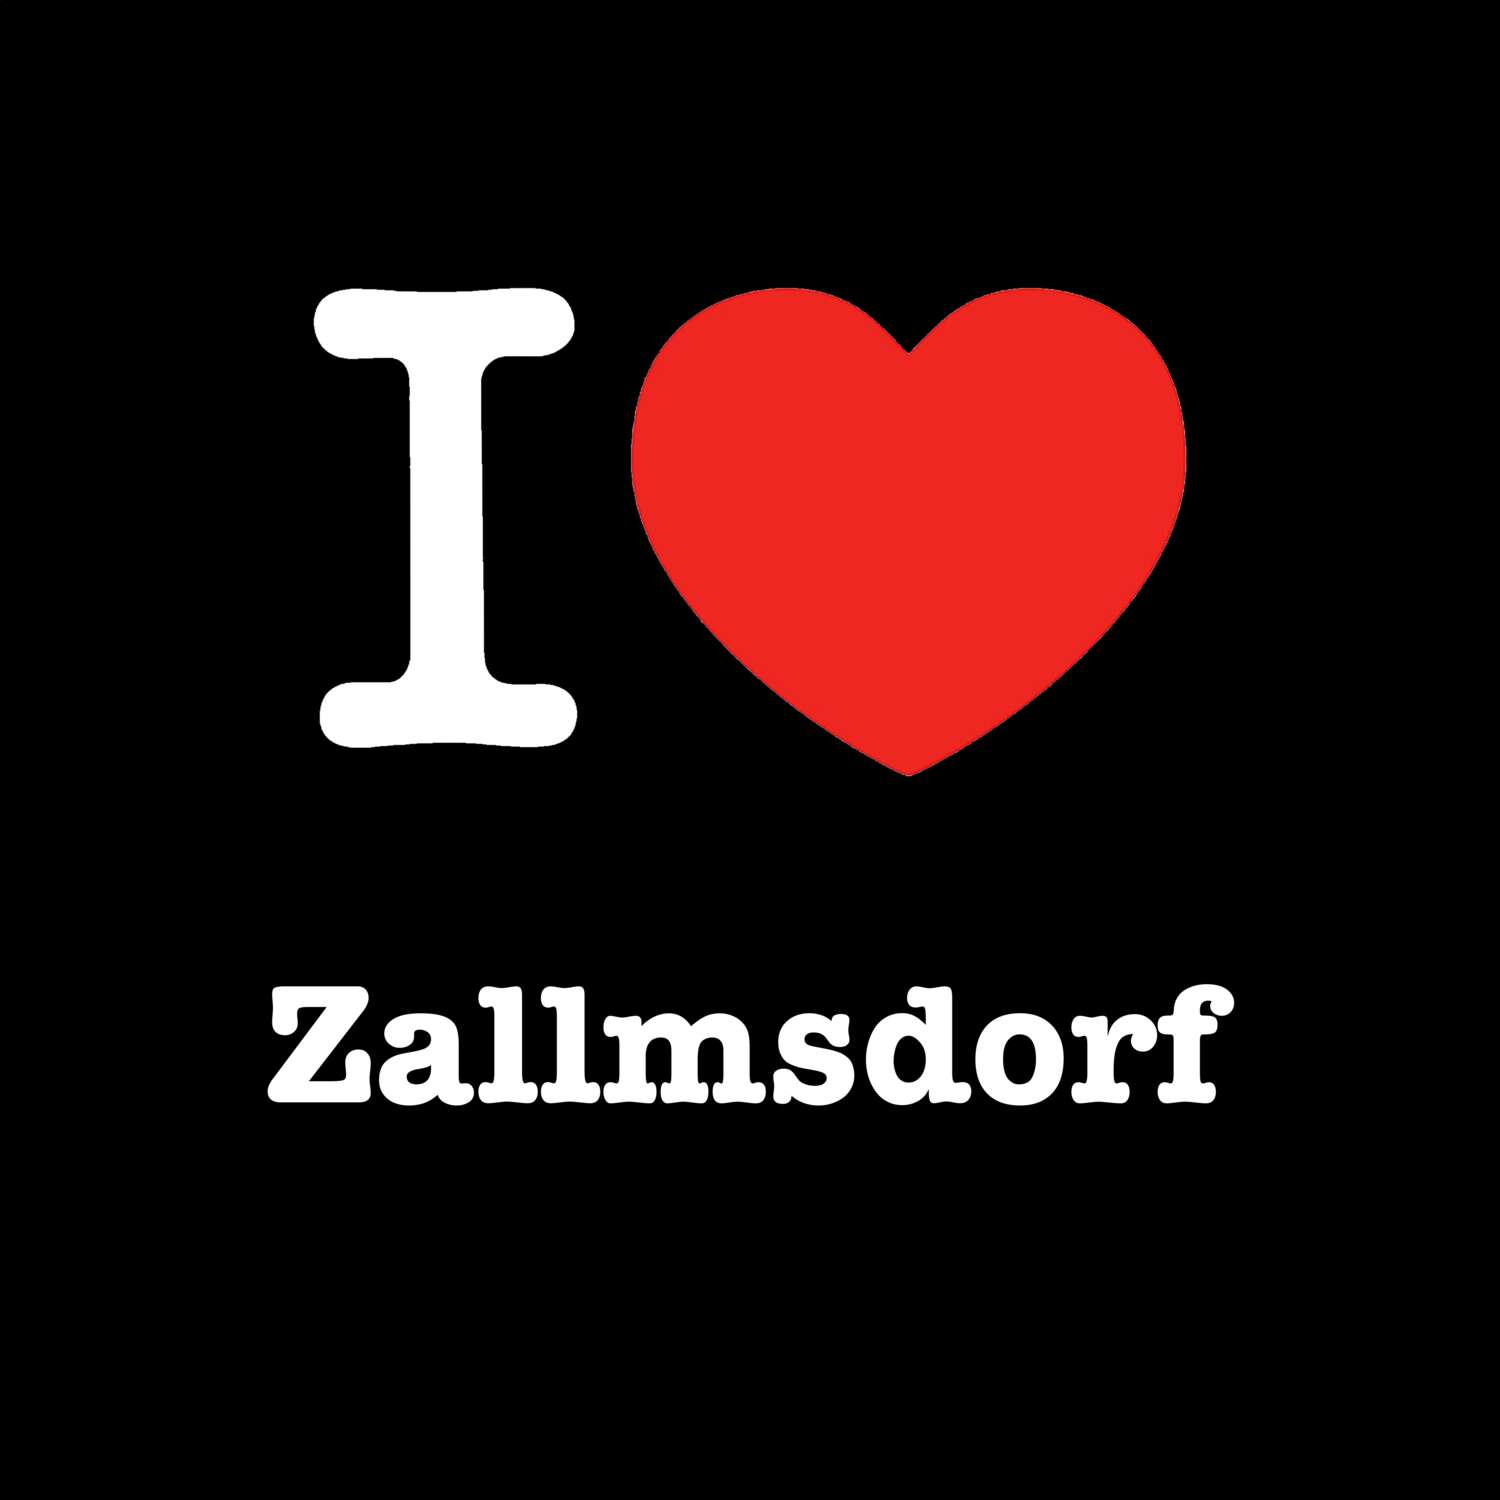 Zallmsdorf T-Shirt »I love«